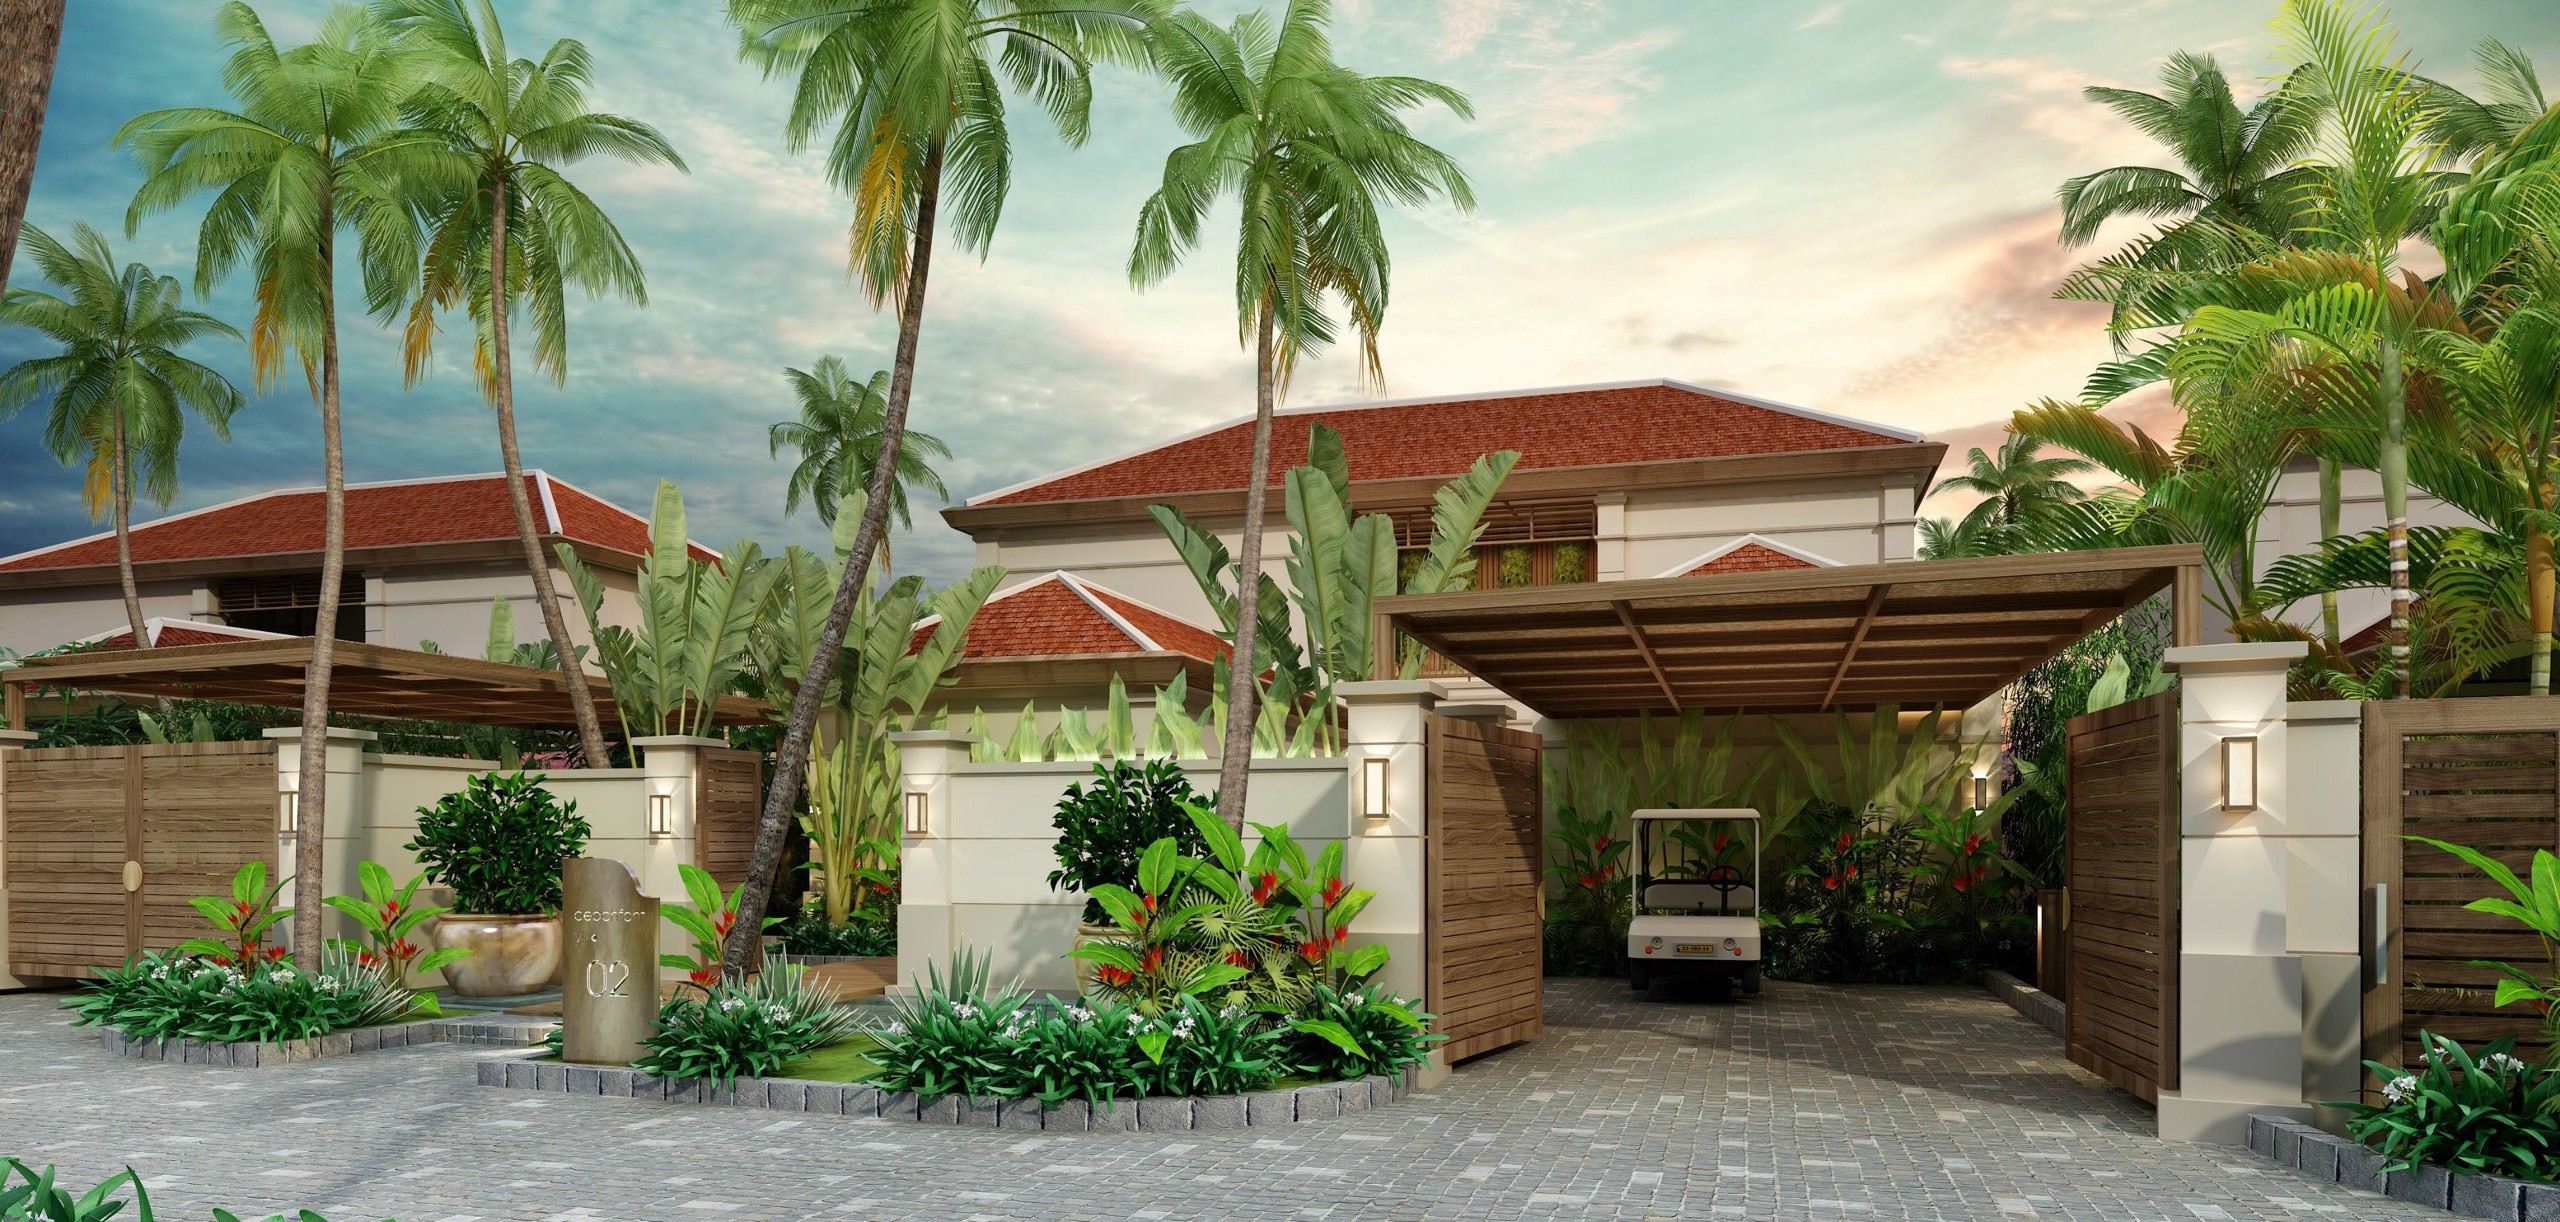 Chỉ 32 tỷ sở hữu ngay căn biệt thự biển 2 phòng ngủ tại bãi biển đẹp nhất dự án Fusion Resort & Villas Đà Nẵng - Lh Hương 0903407925 9